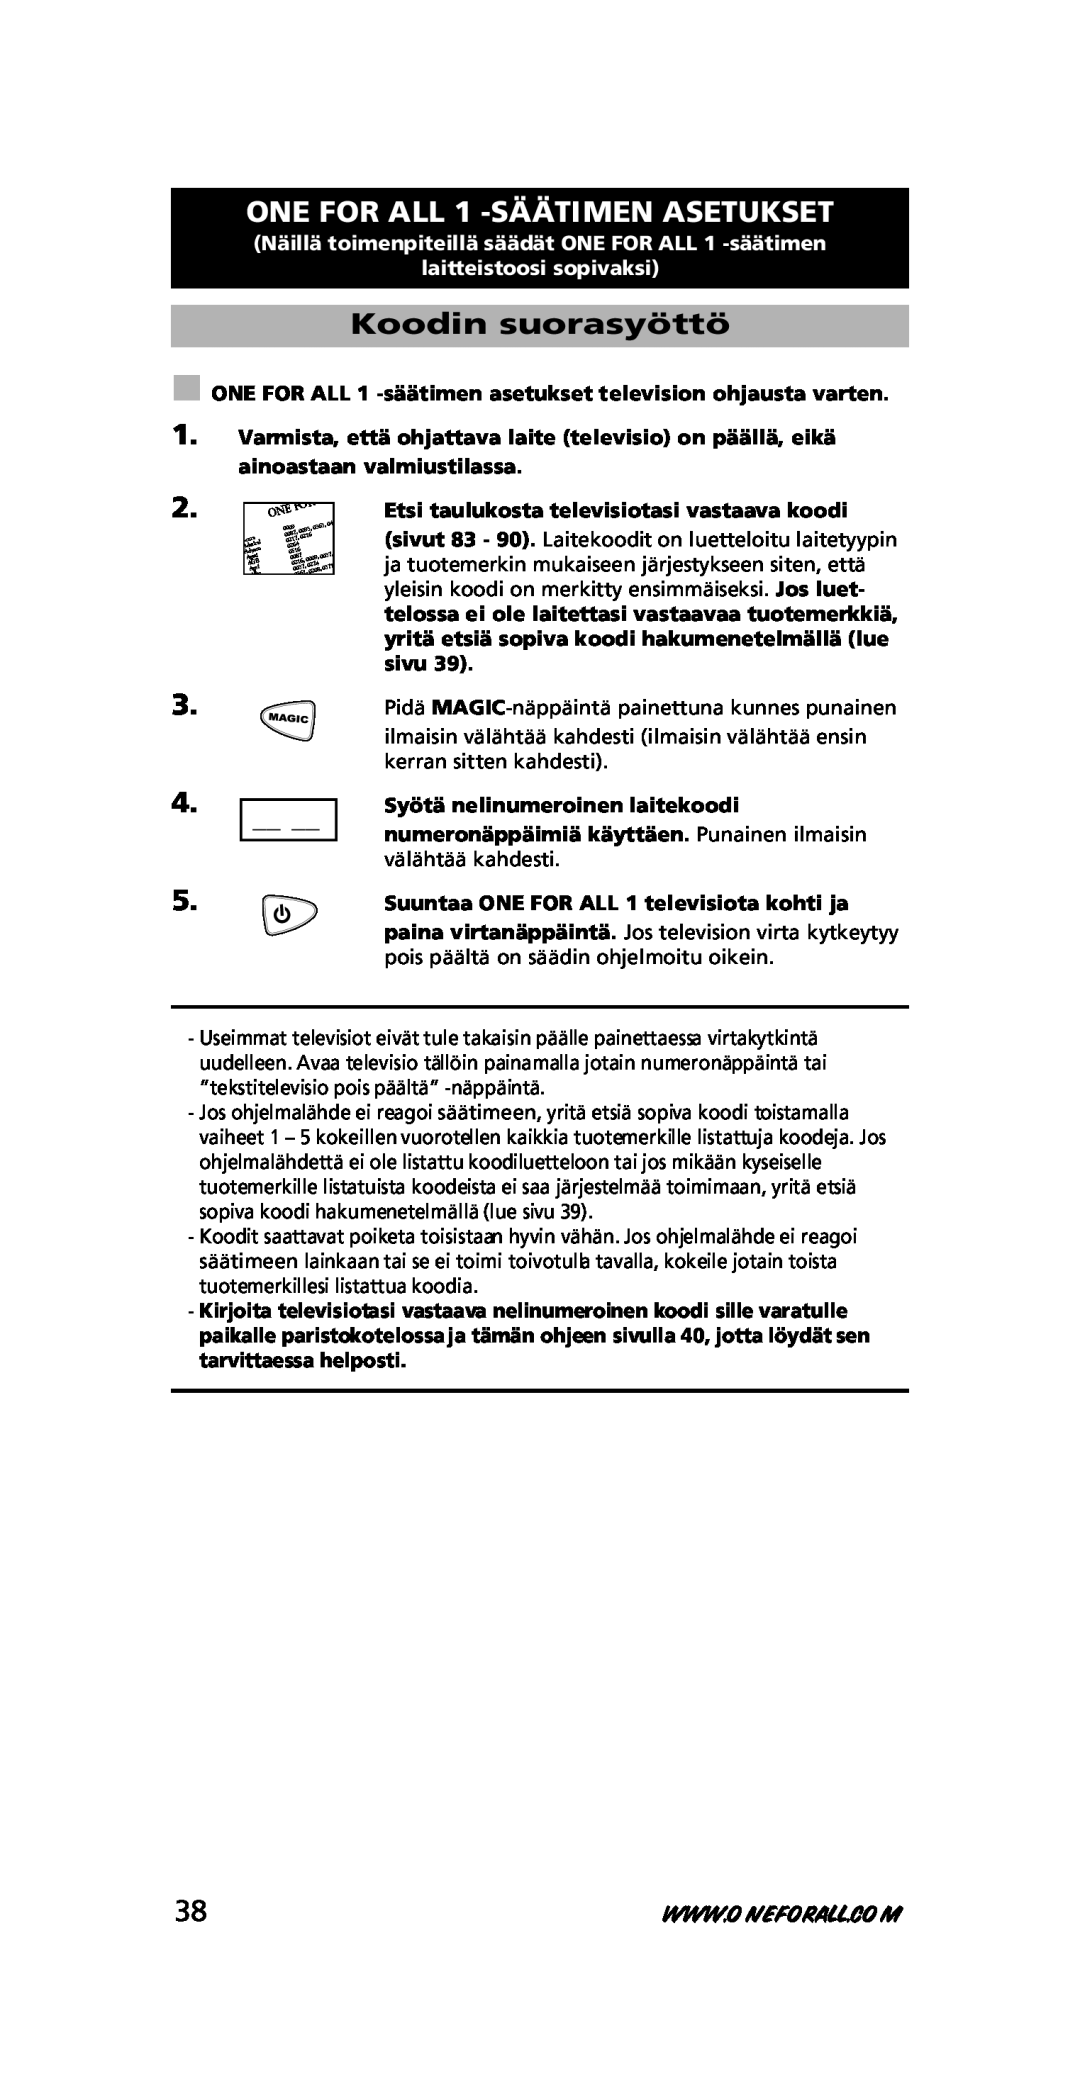 One for All URC-7711 instruction manual ONE FOR ALL 1 -SÄÄTIMEN ASETUKSET, Koodin suorasyöttö, laitteistoosi sopivaksi 